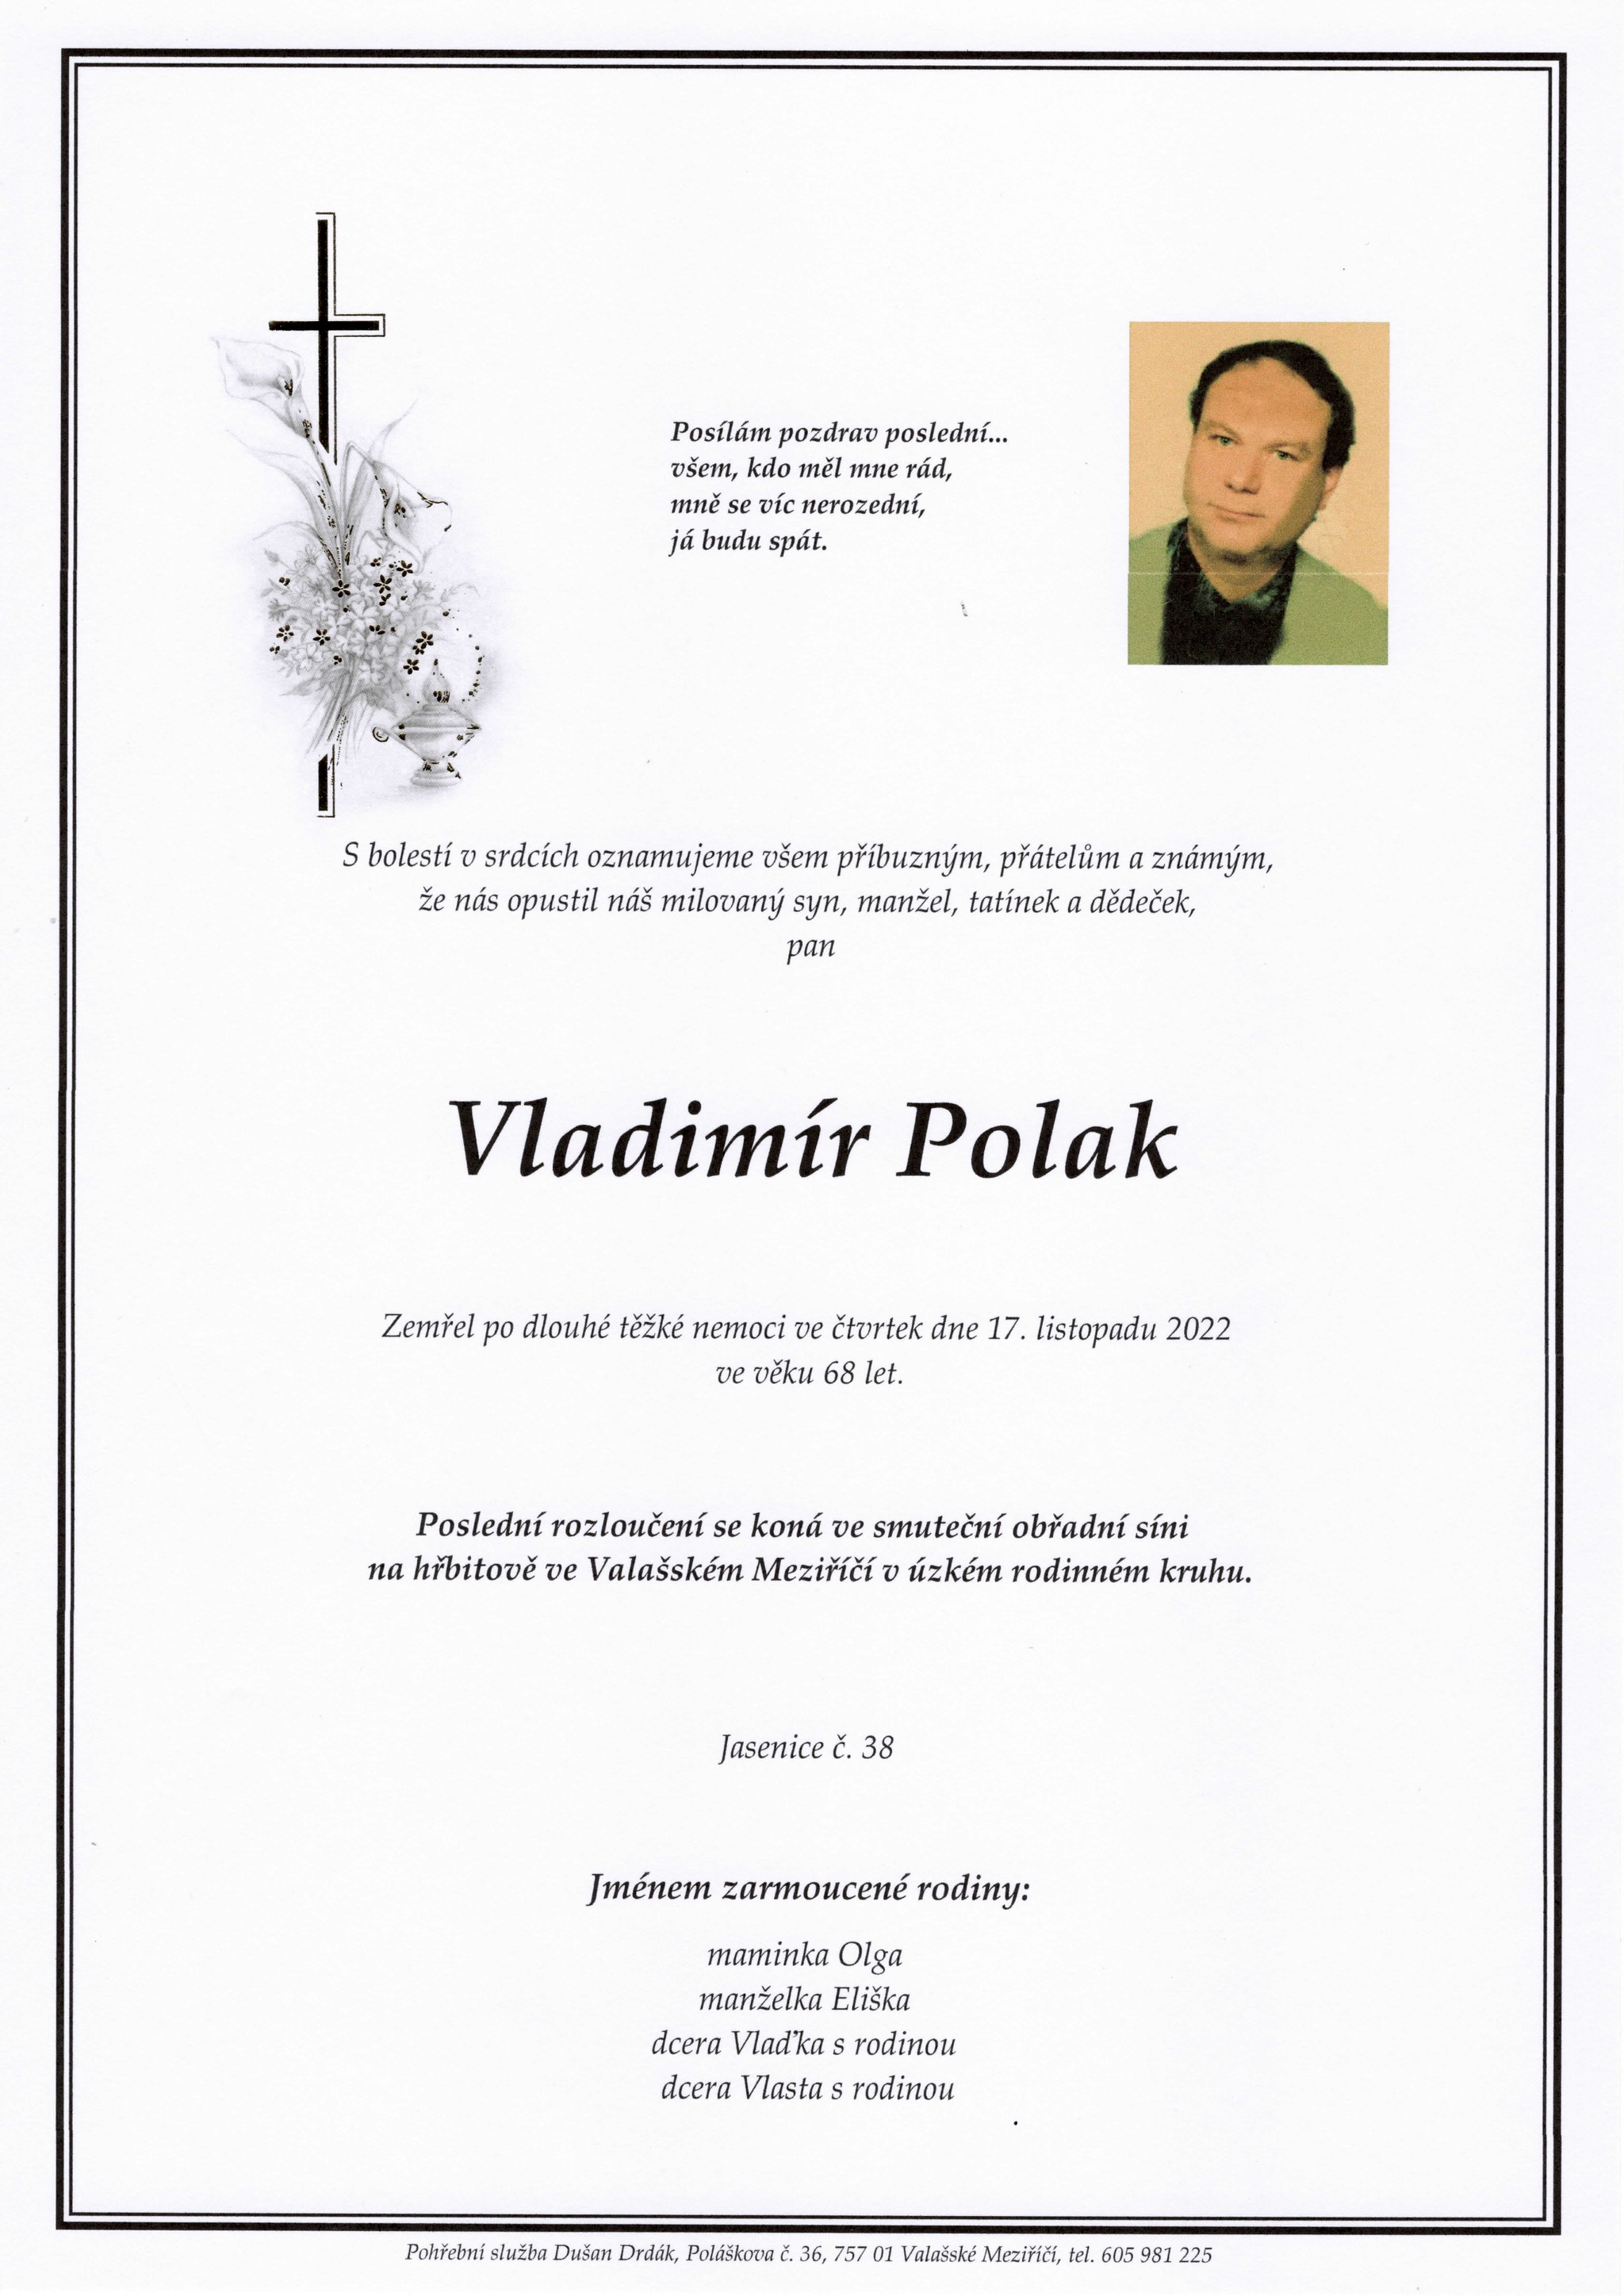 Vladimír Polak